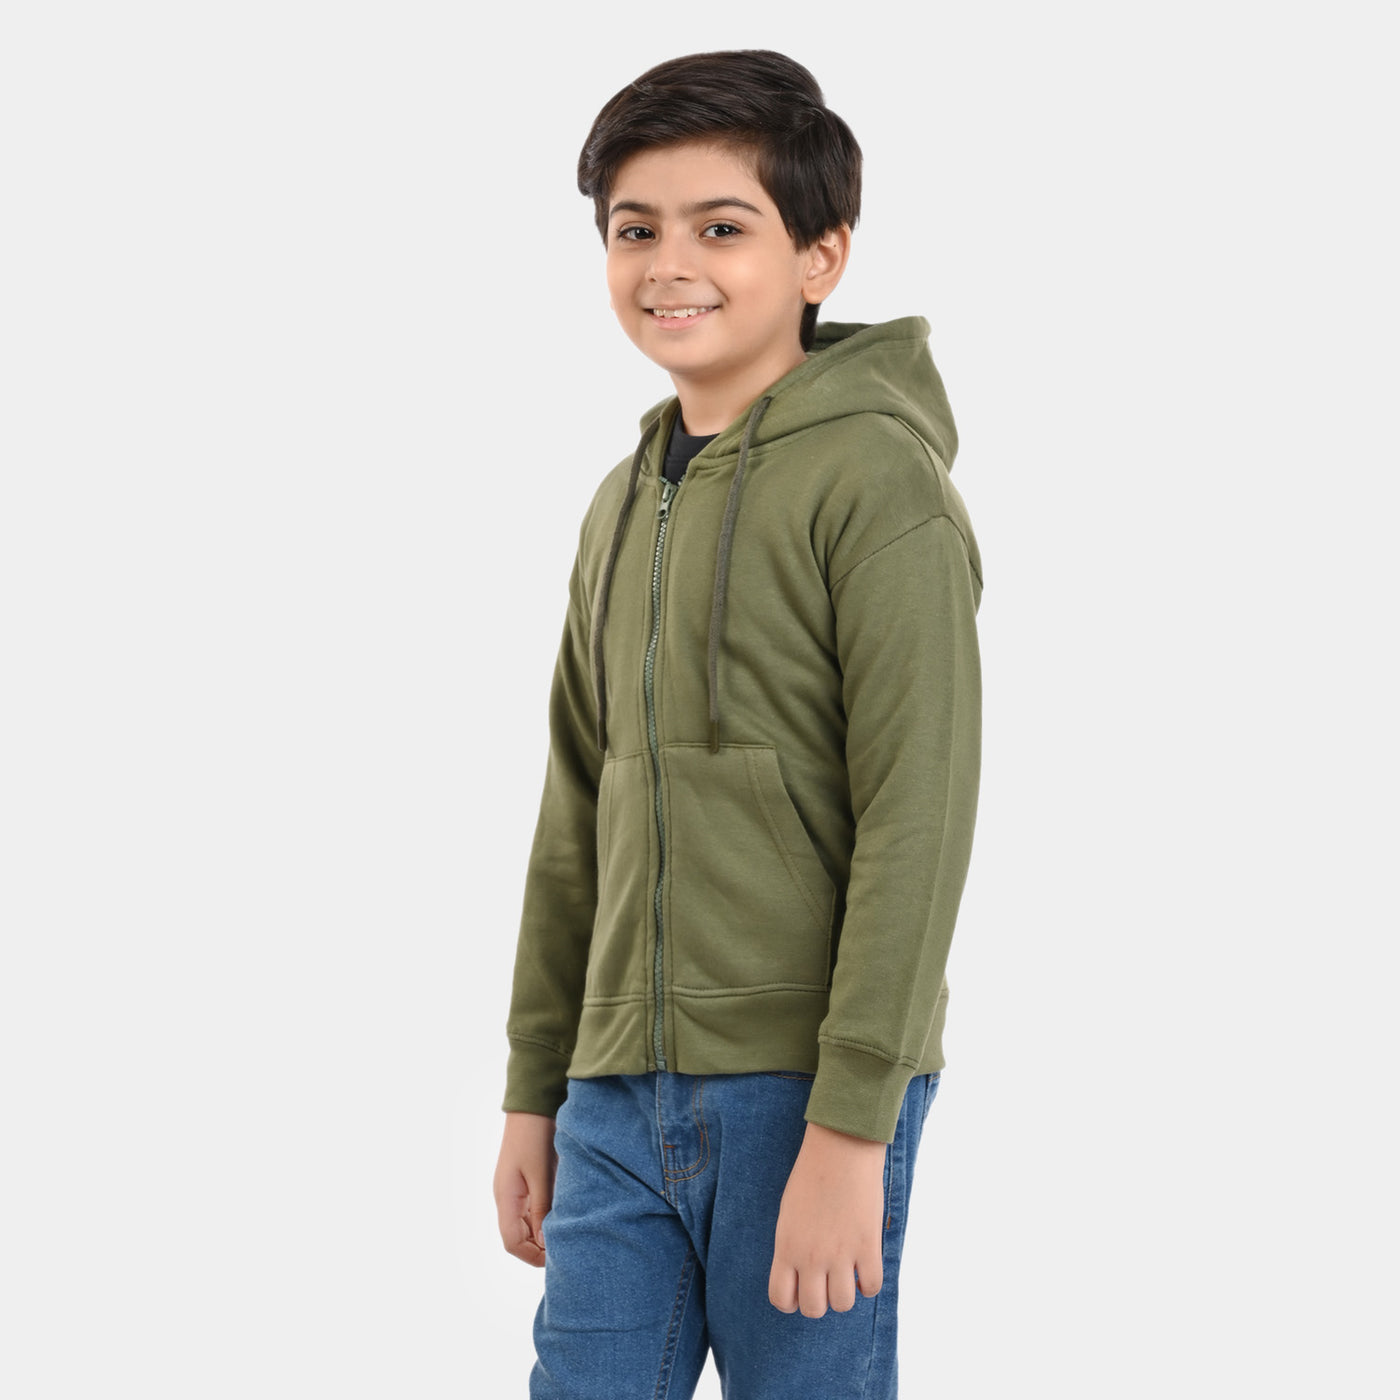 Boys Knitted Zipped Jacket Basic-Olive